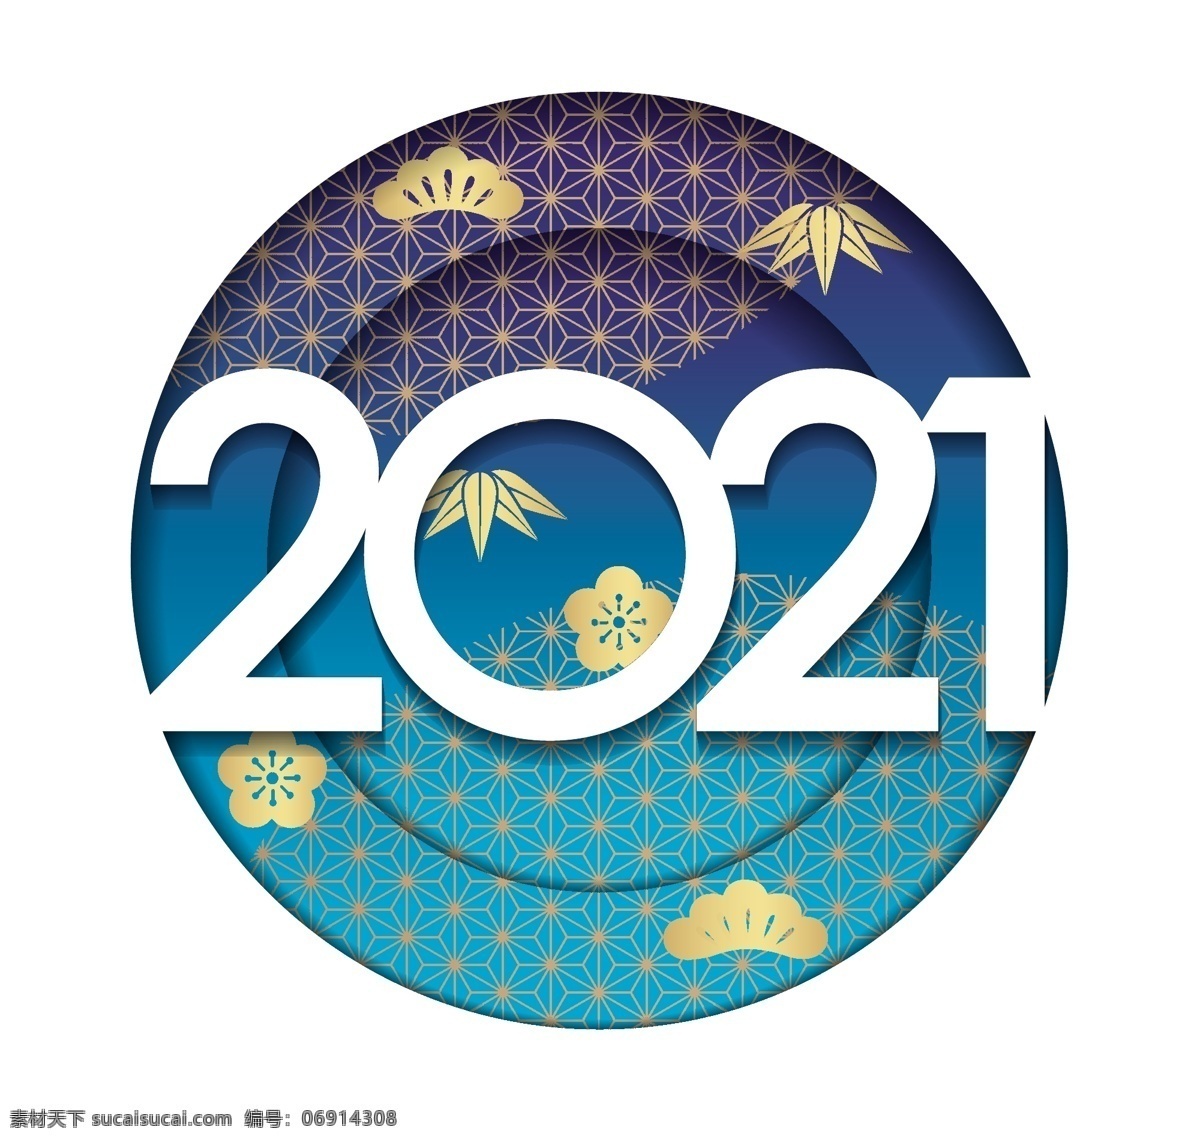 2021 文字 创意2012 文字素材 2021新年 牛年文字 小元素